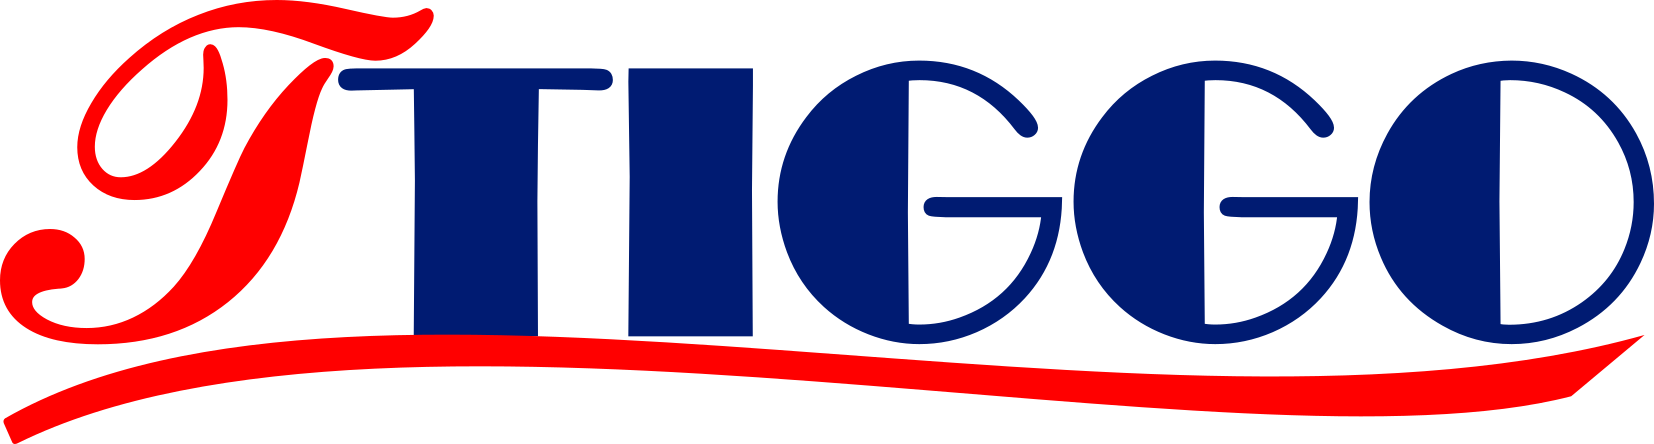 Jiaxing Tiggo Car Seats Co., Ltd.